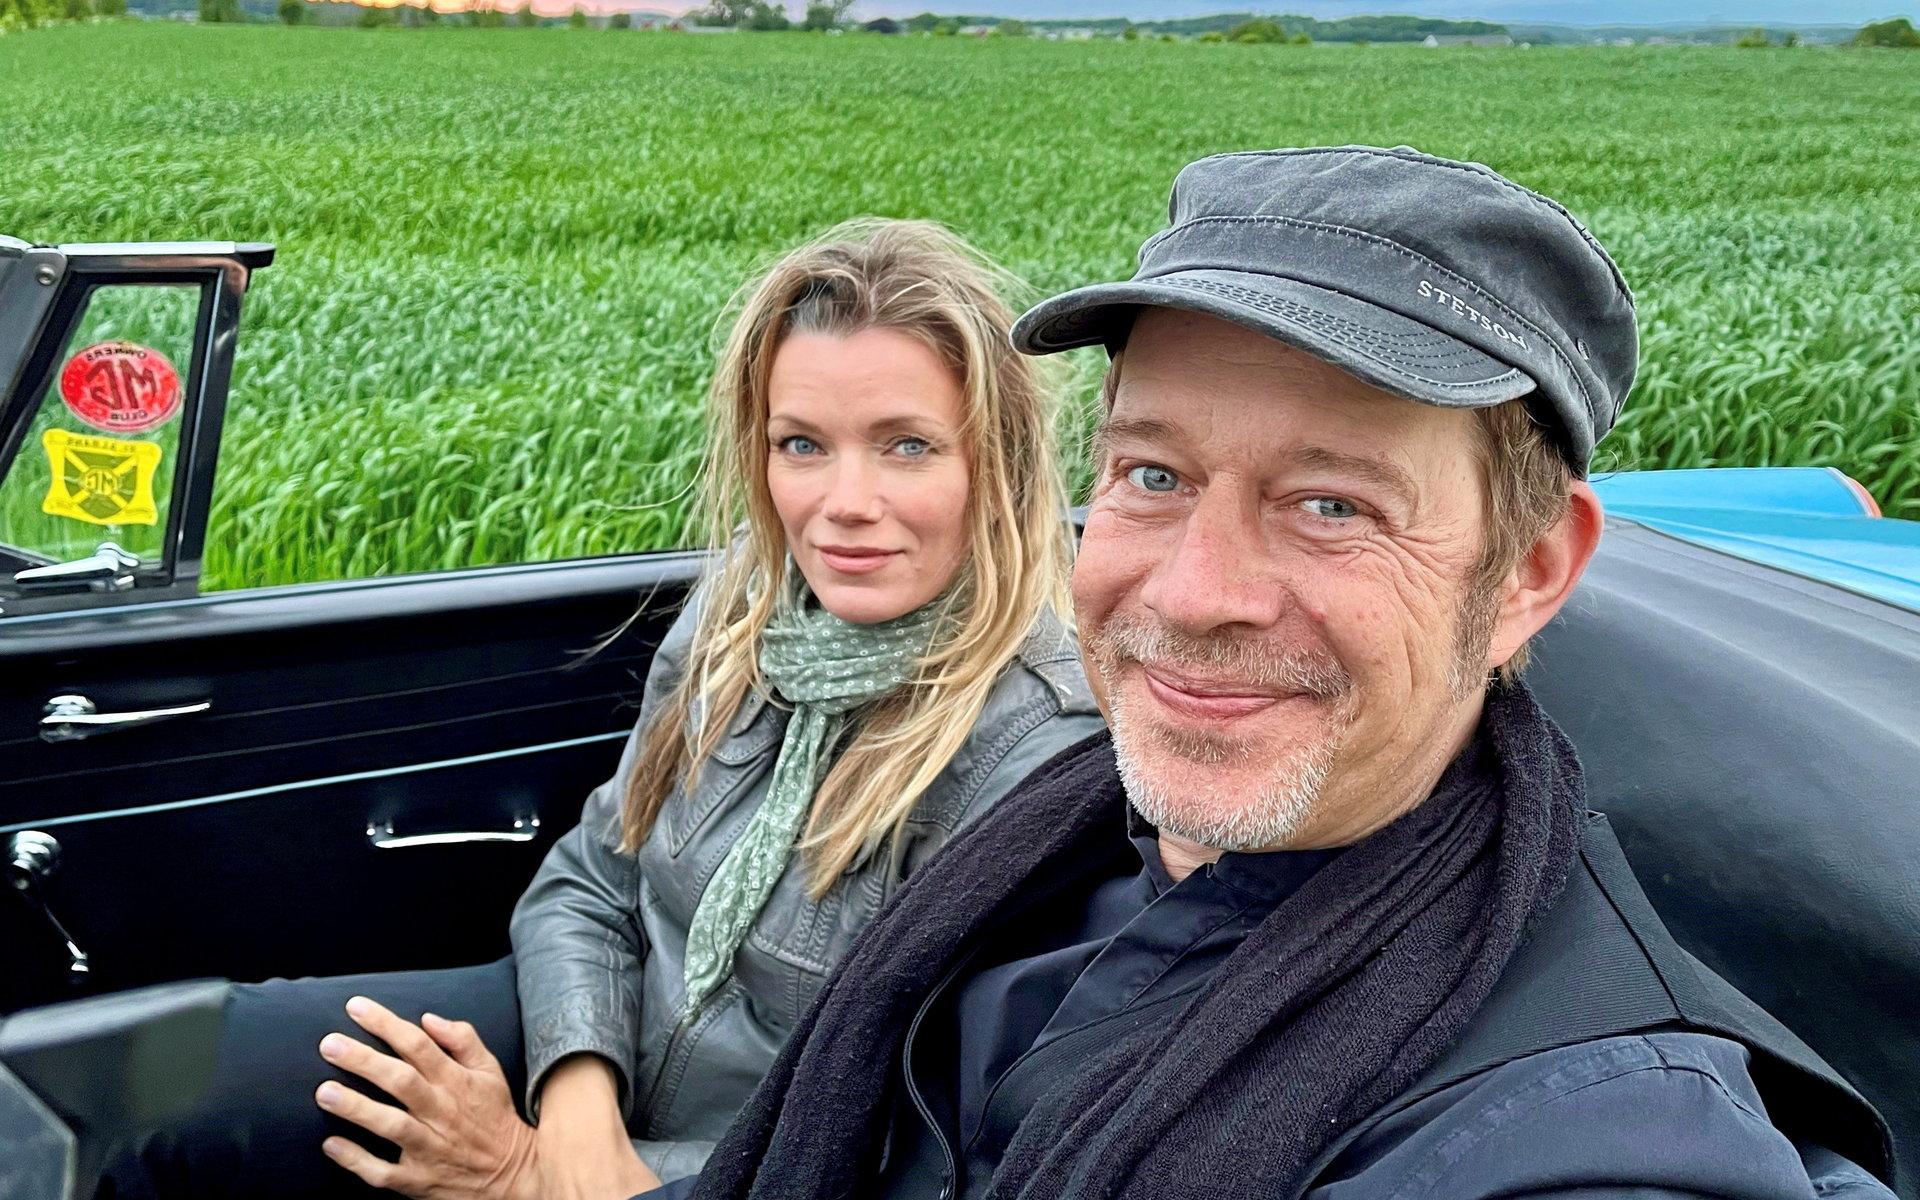 Skådespelaren Marie Måwe och Reine ”Vargen” Johansson i en kunglig MG Roadster veterancabriolet.